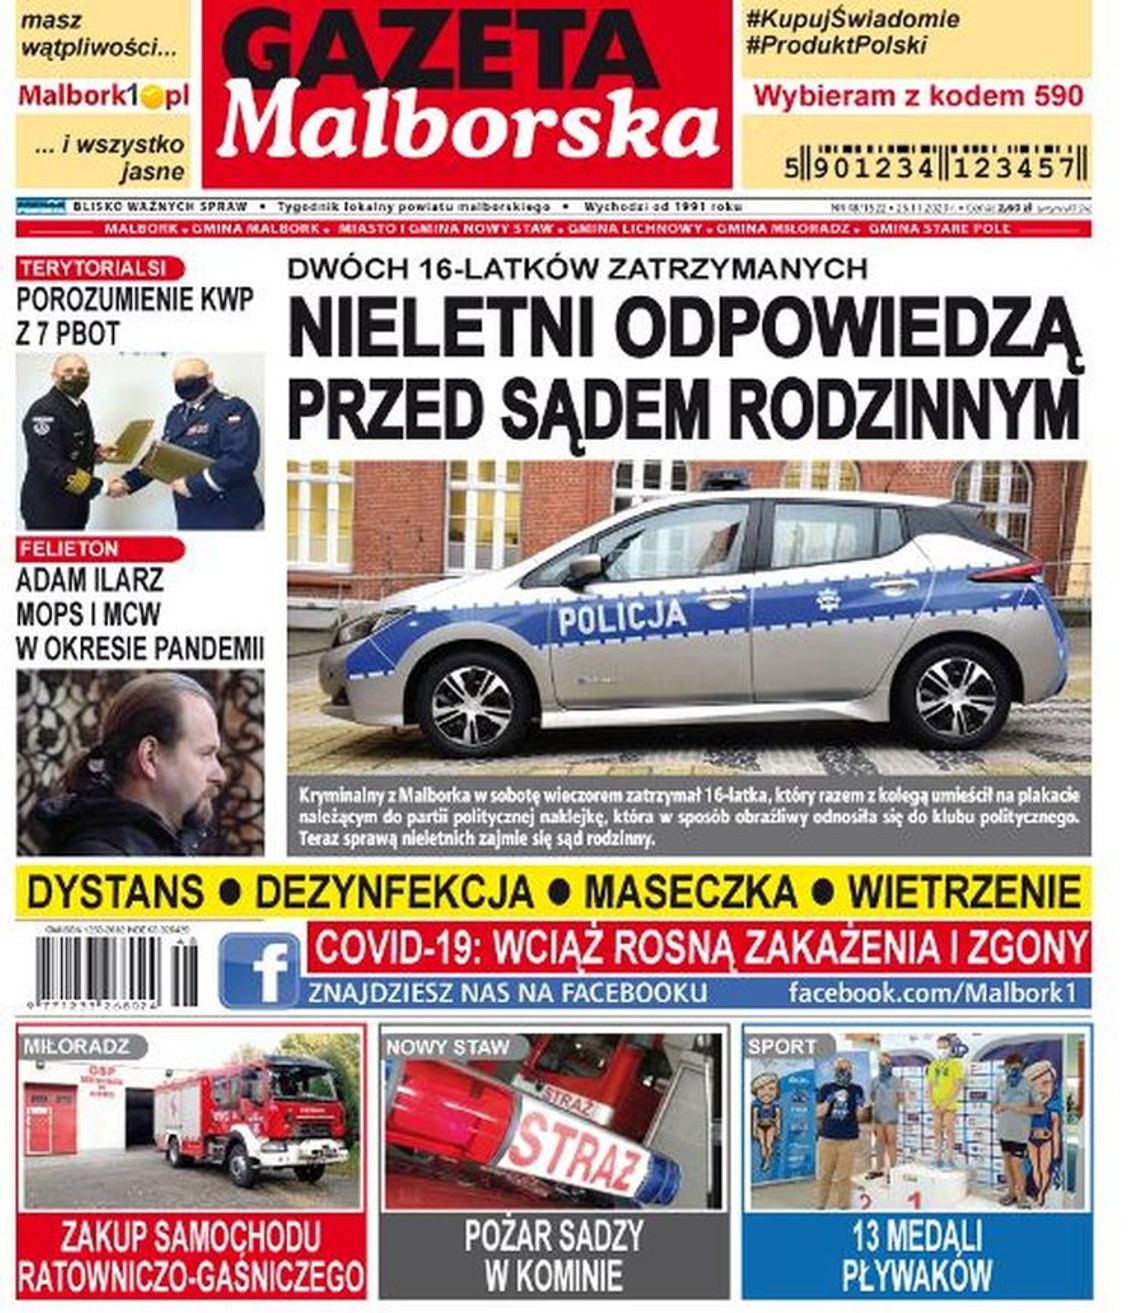 Nowy numer Gazety Malborskiej już w sprzedaży. Najświeższe informacje z Malborka i okolic naszego powiatu już w Twoim kiosku. Co w środku?